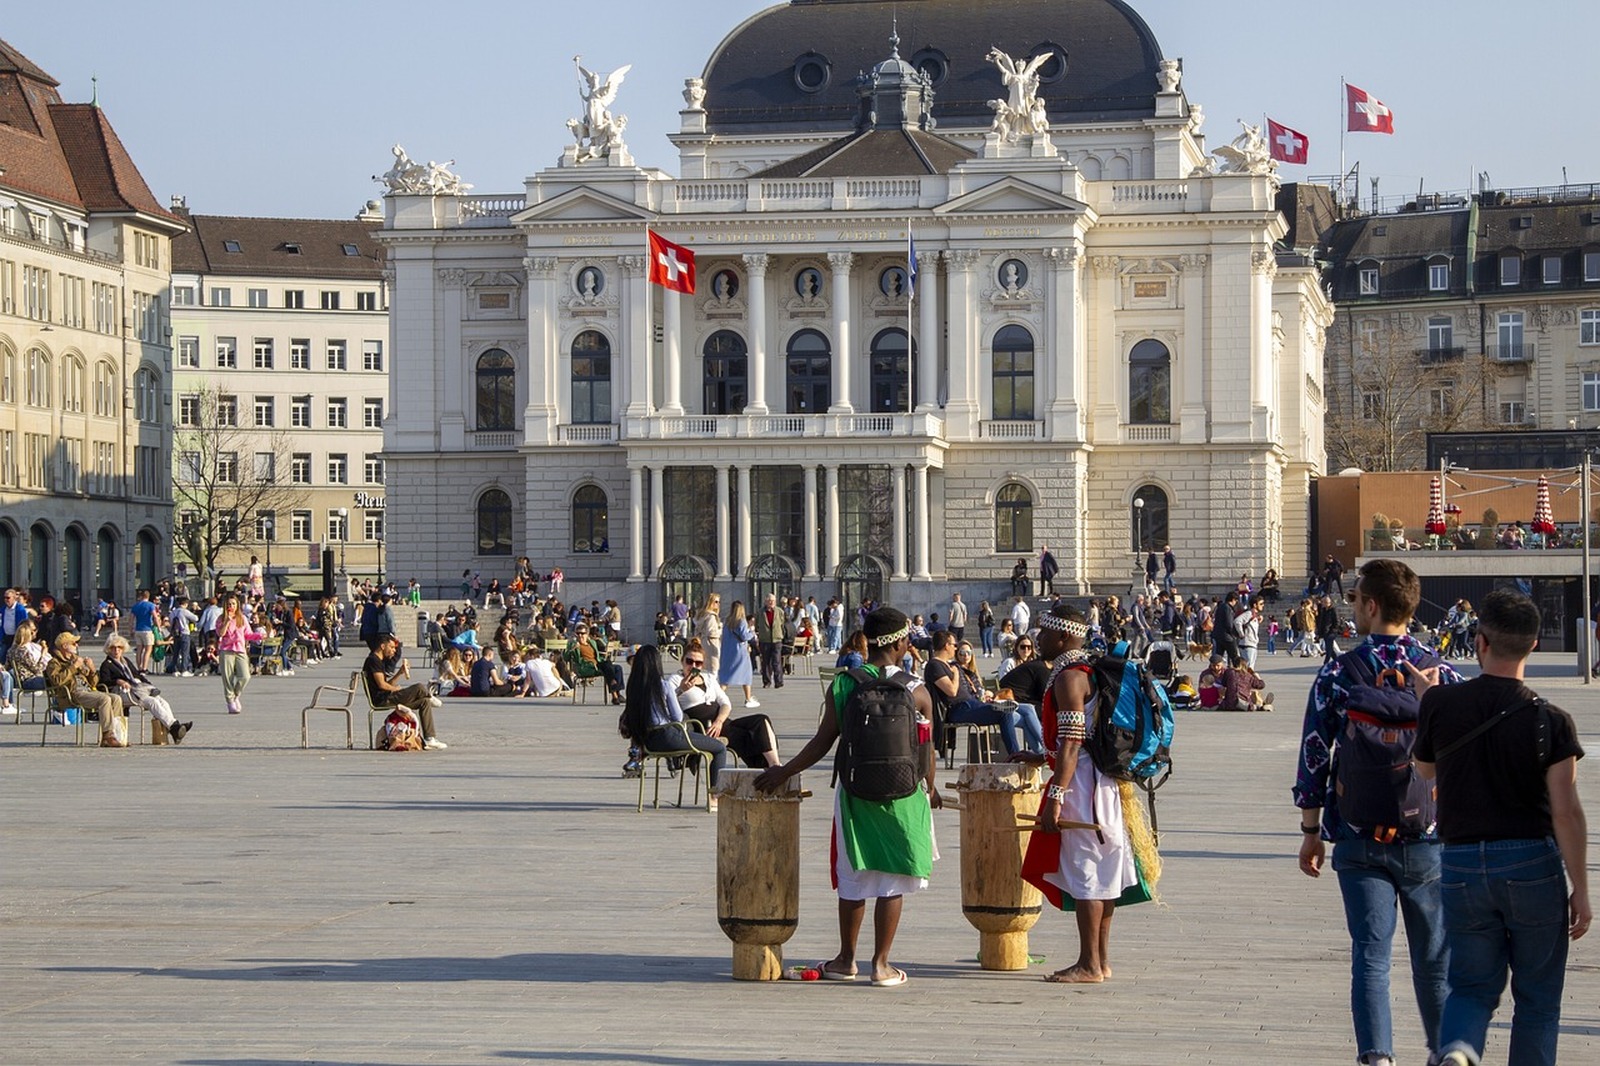 Image of Zurich Opera House (Opernhaus Zurich) by Team PhotoHound